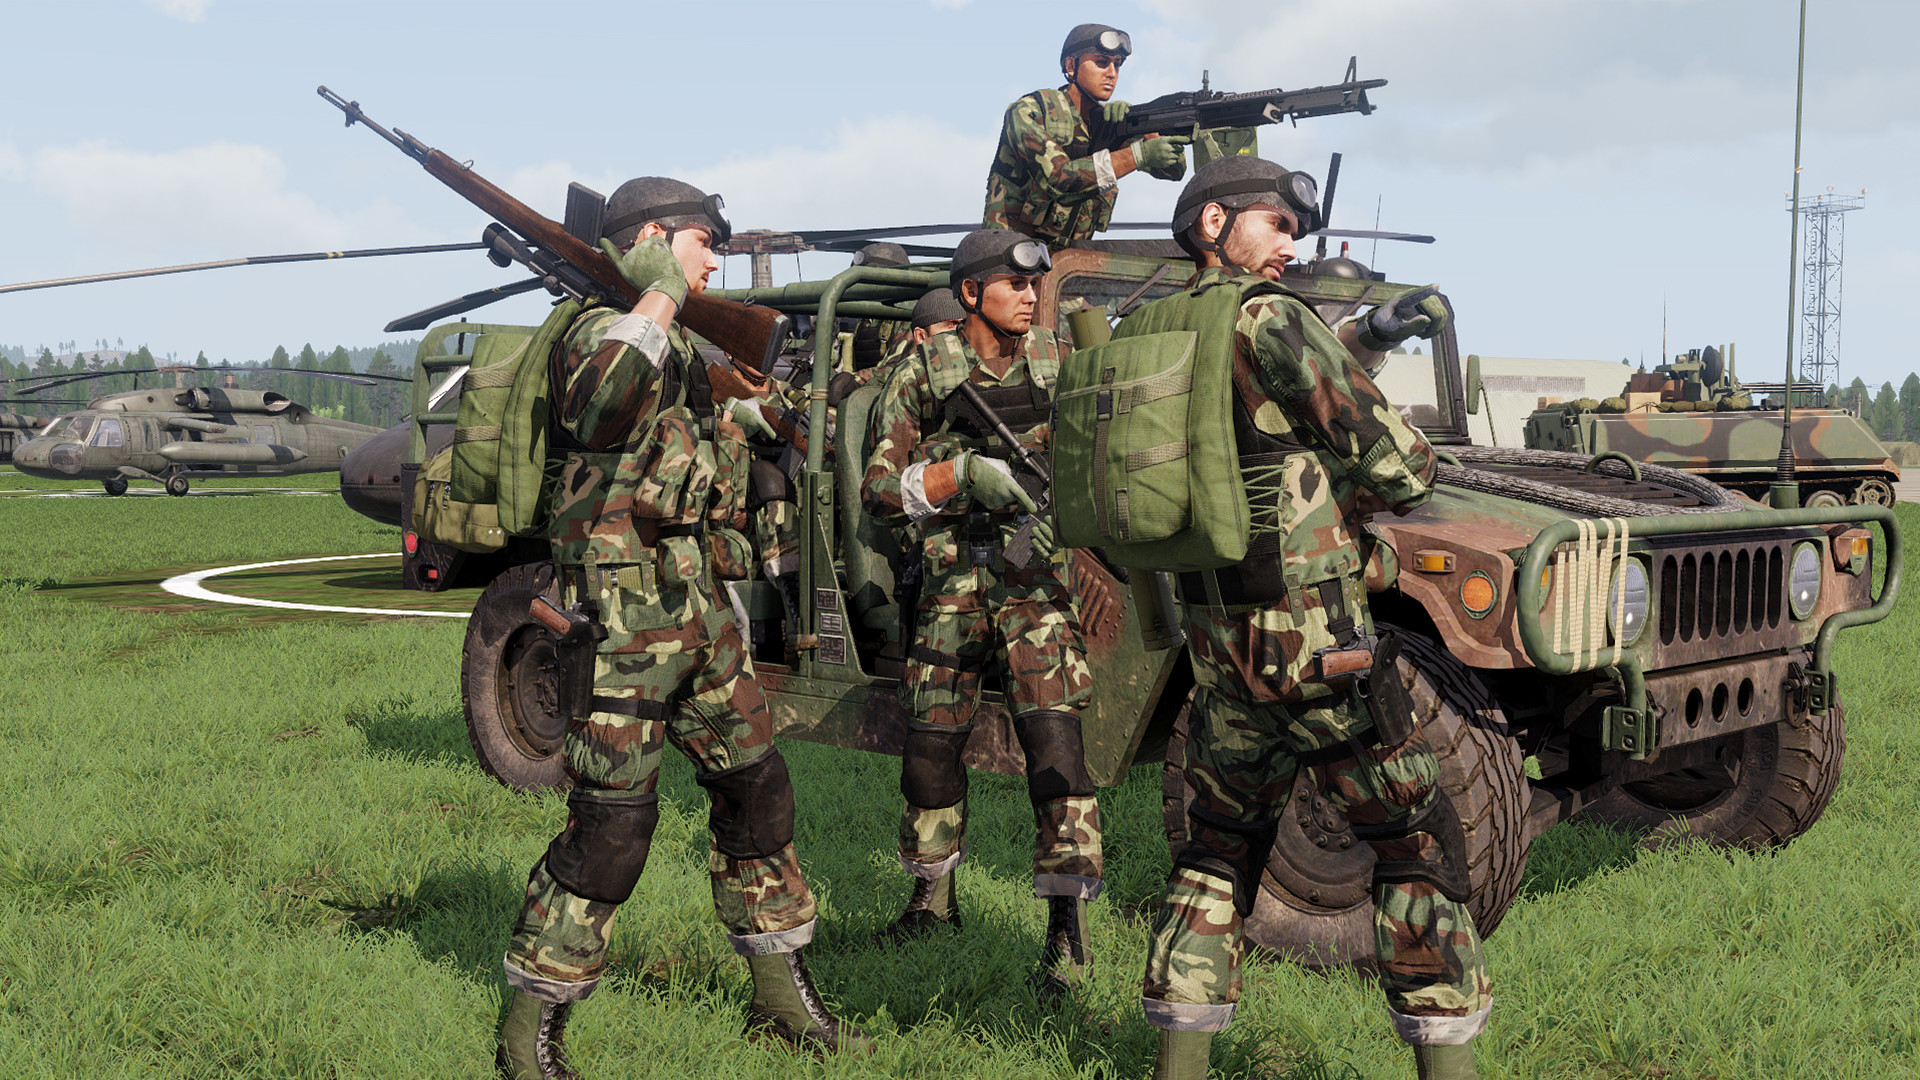 《武装突袭3》最新DLC“CSLA铁幕” 重现冷战捷克斯洛伐克